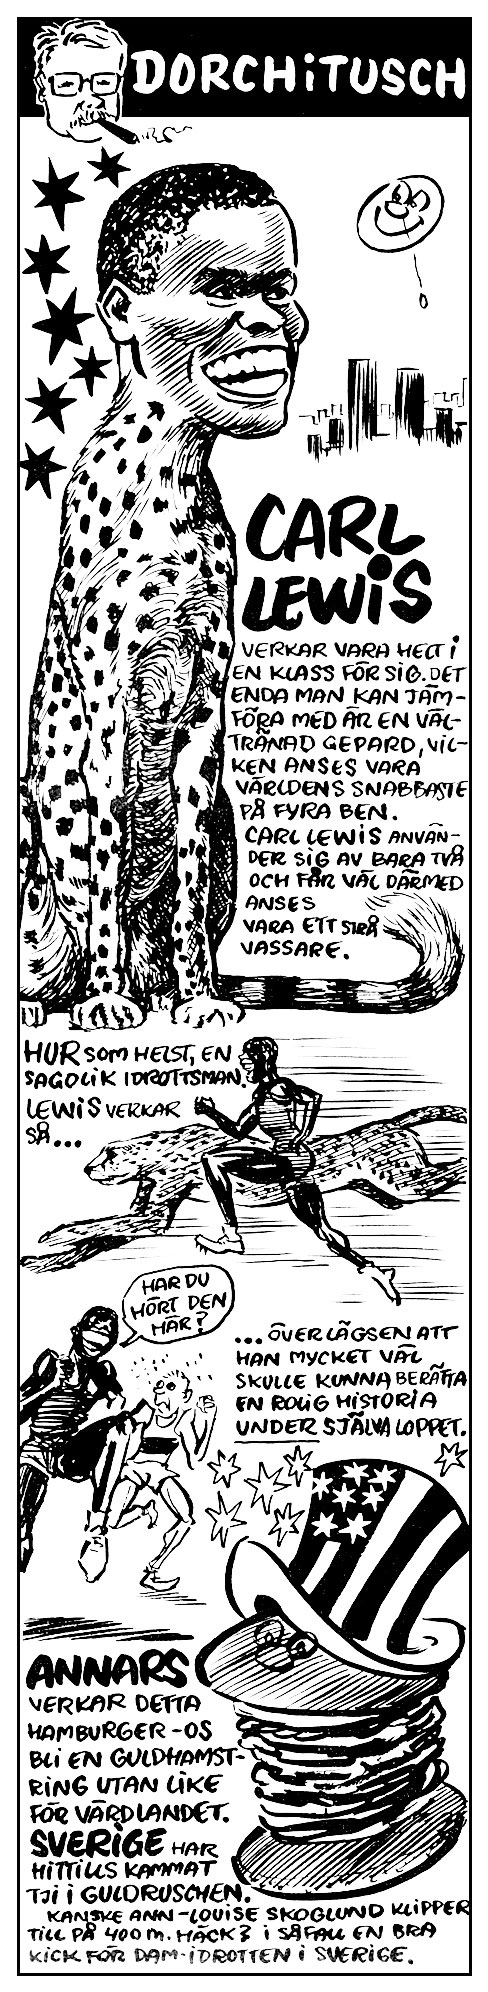 Carl Lewis